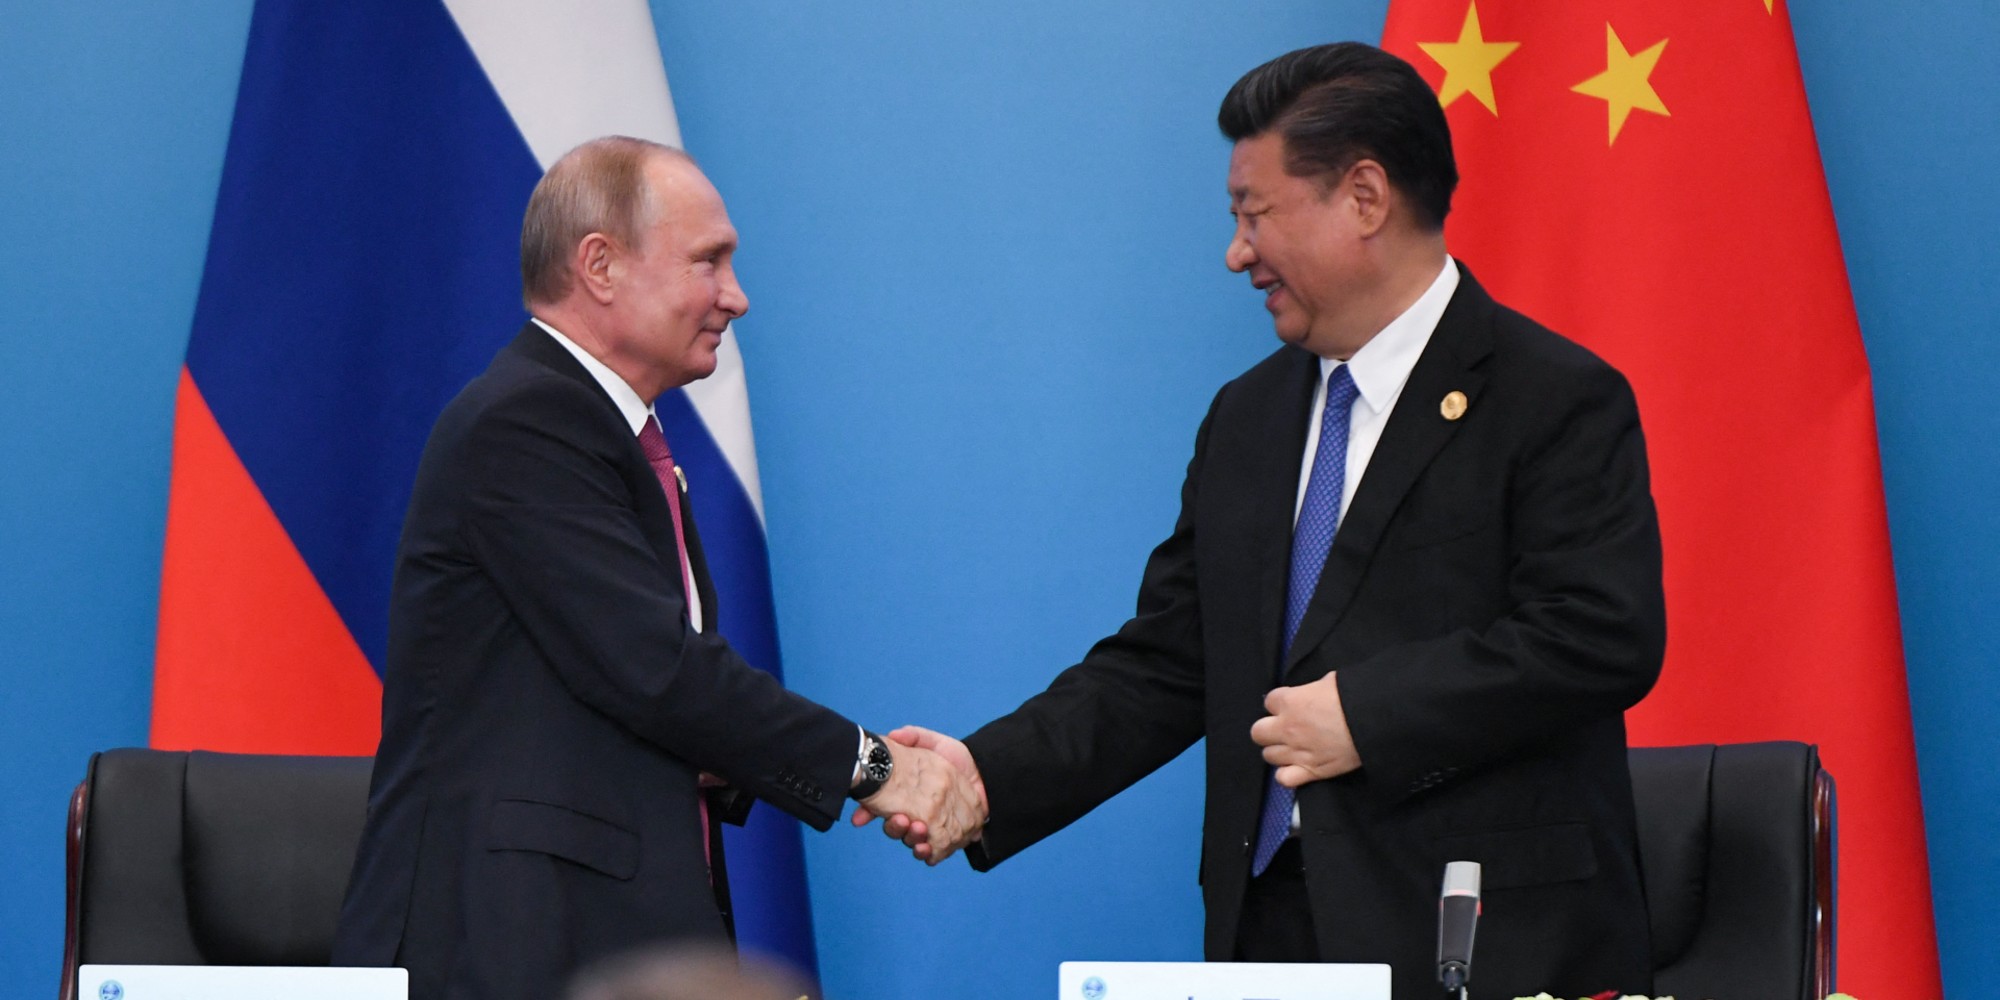 DIPLOMATIE- Vladimir Poutine s’entretient avec Xi Jinping